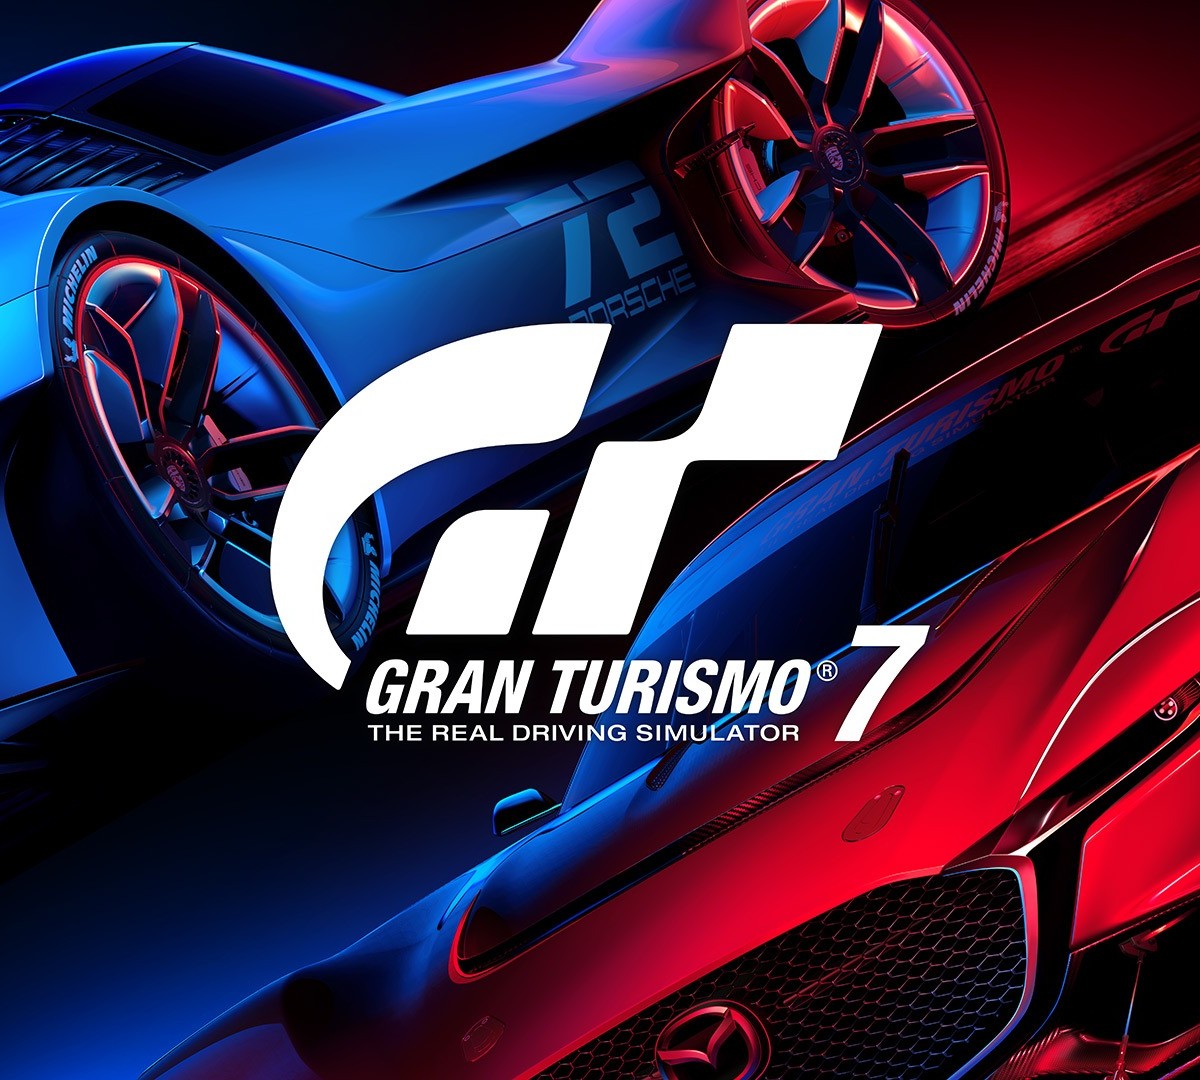 Novo trailer e lista de recursos do Gran Turismo 6 revelados! - gran-turismo .com